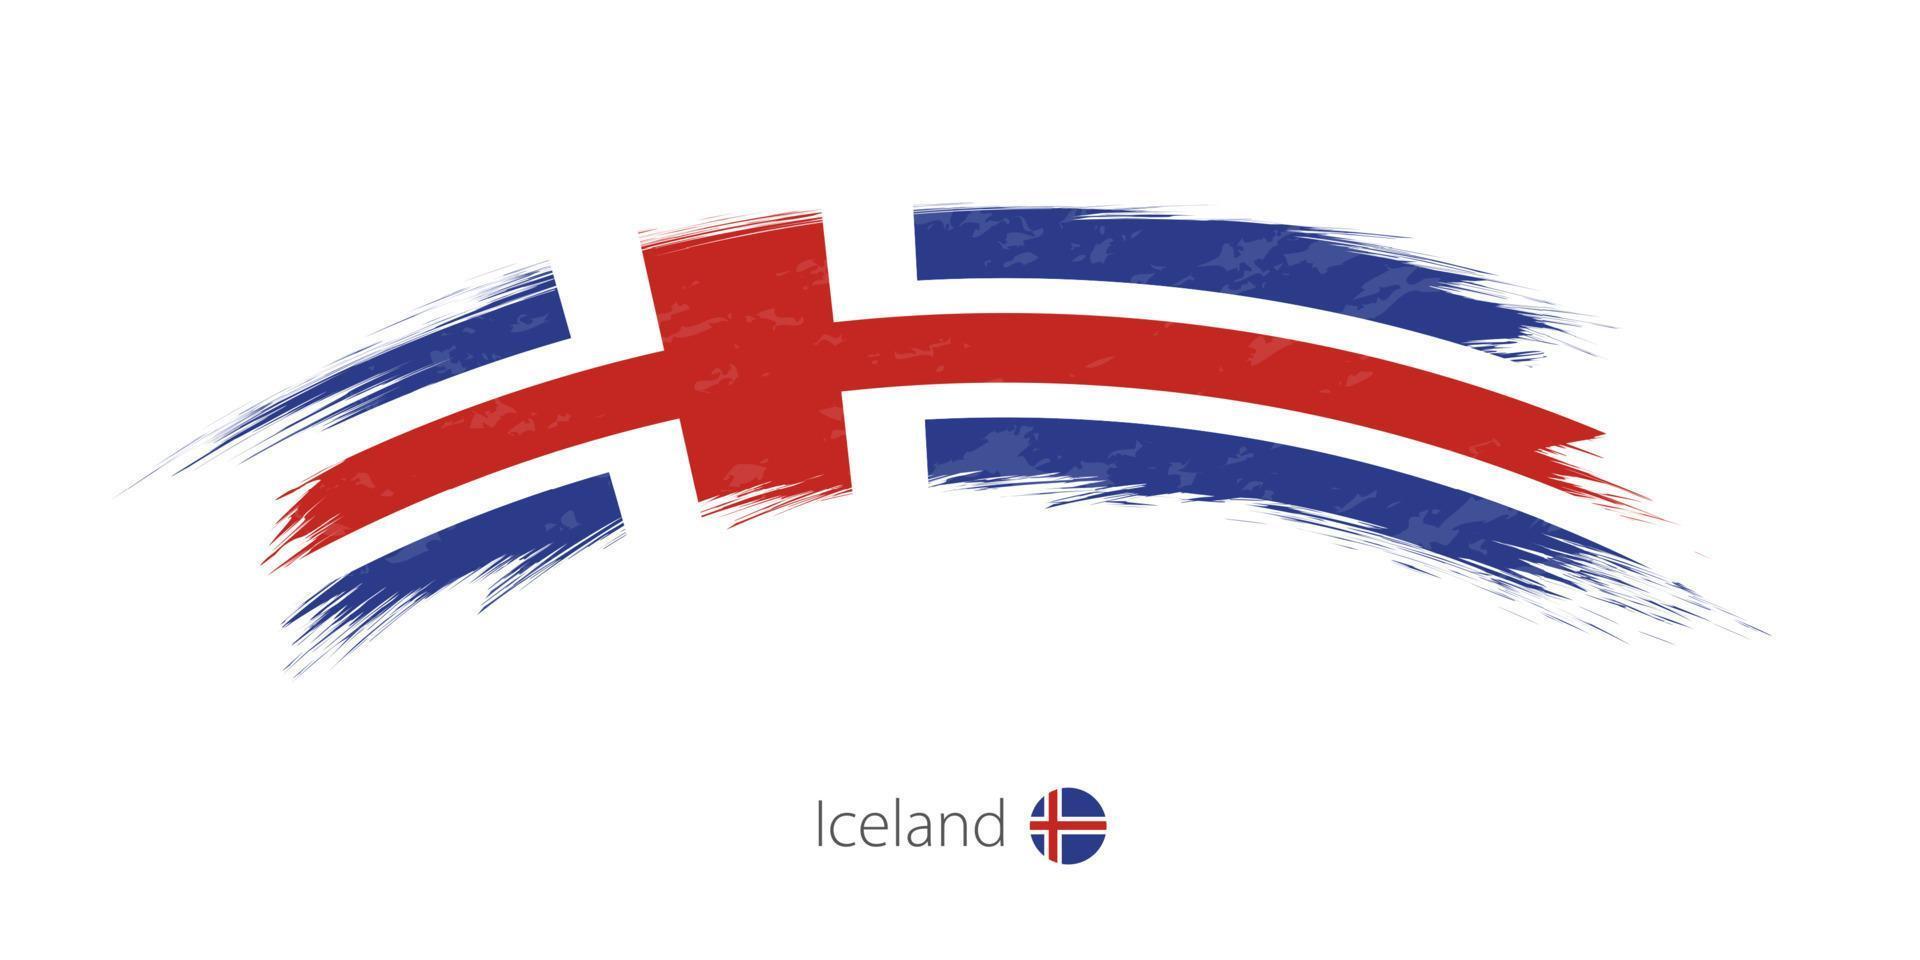 drapeau de l'islande en coup de pinceau grunge arrondi. vecteur